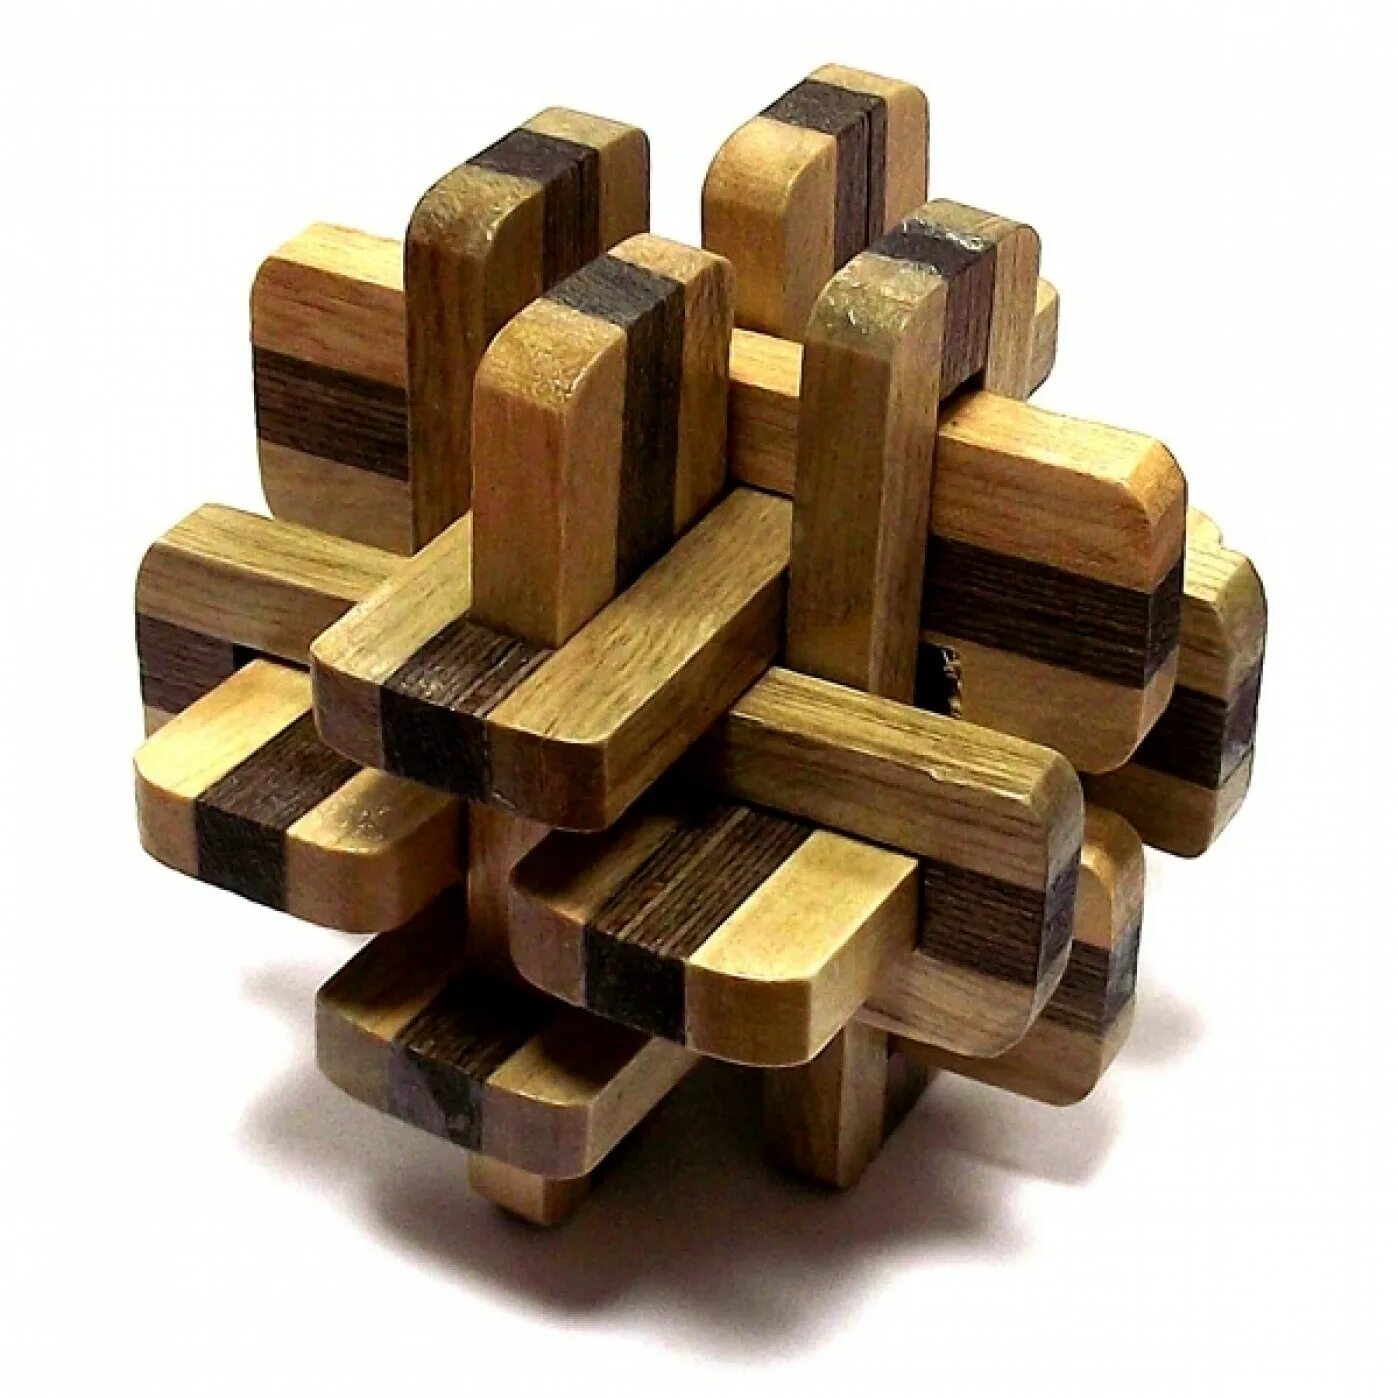 Головоломка. Головоломка деревянная DLS-02. Eureka деревянная головоломка. Головоломка деревянная Эврика cbs001-002a3. Головоломка China Bluesky trading деревянная к6.